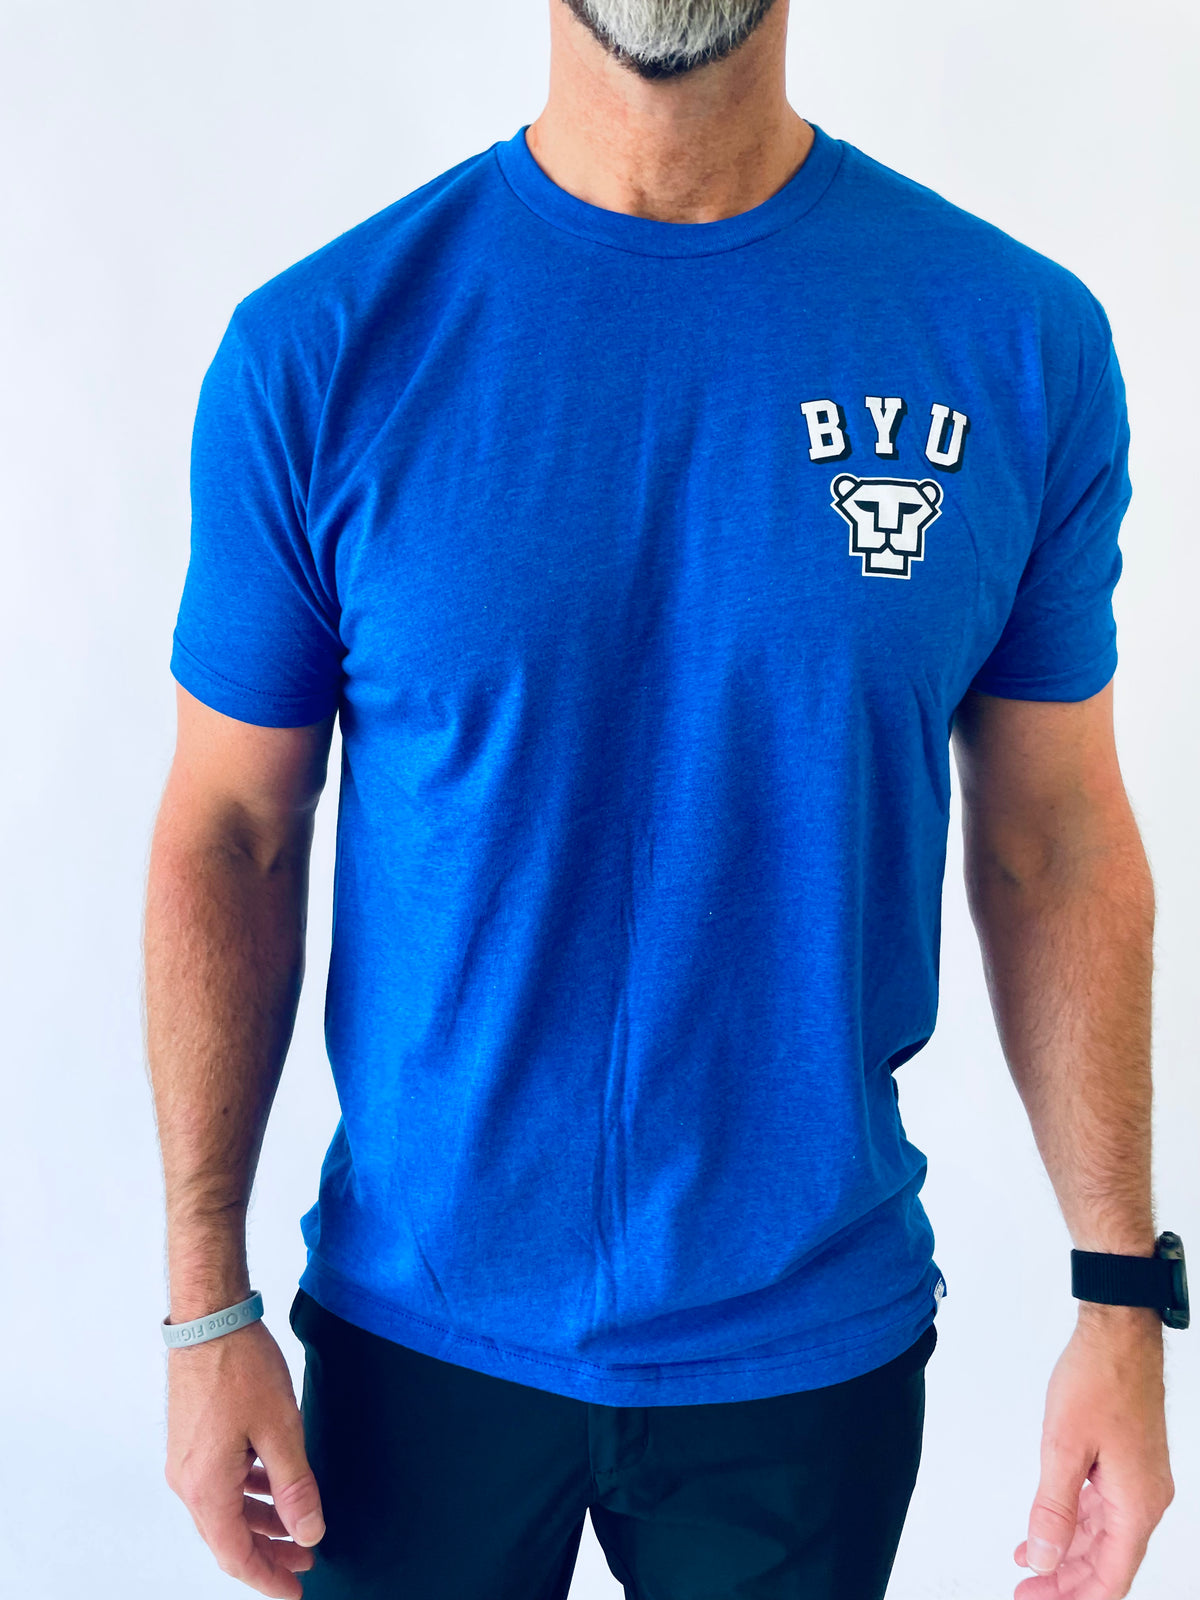 BYU Vector Cougar T-Shirt